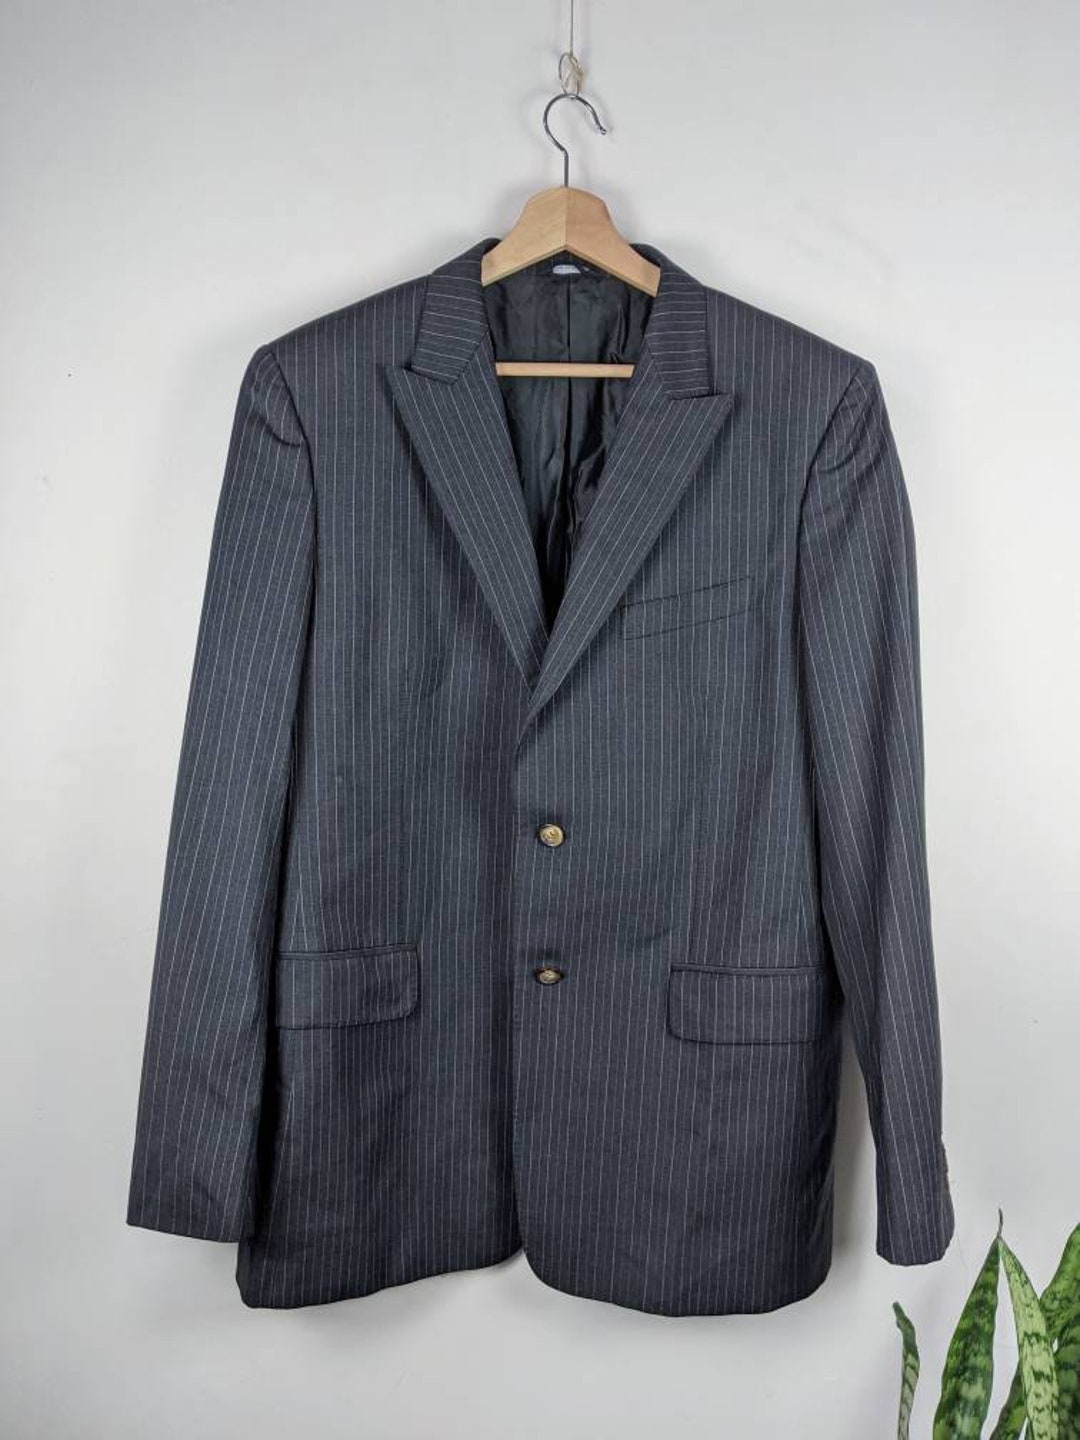 Vintage Sonia Rykiel Men's Suit Made in France Jacket Pants - Etsy